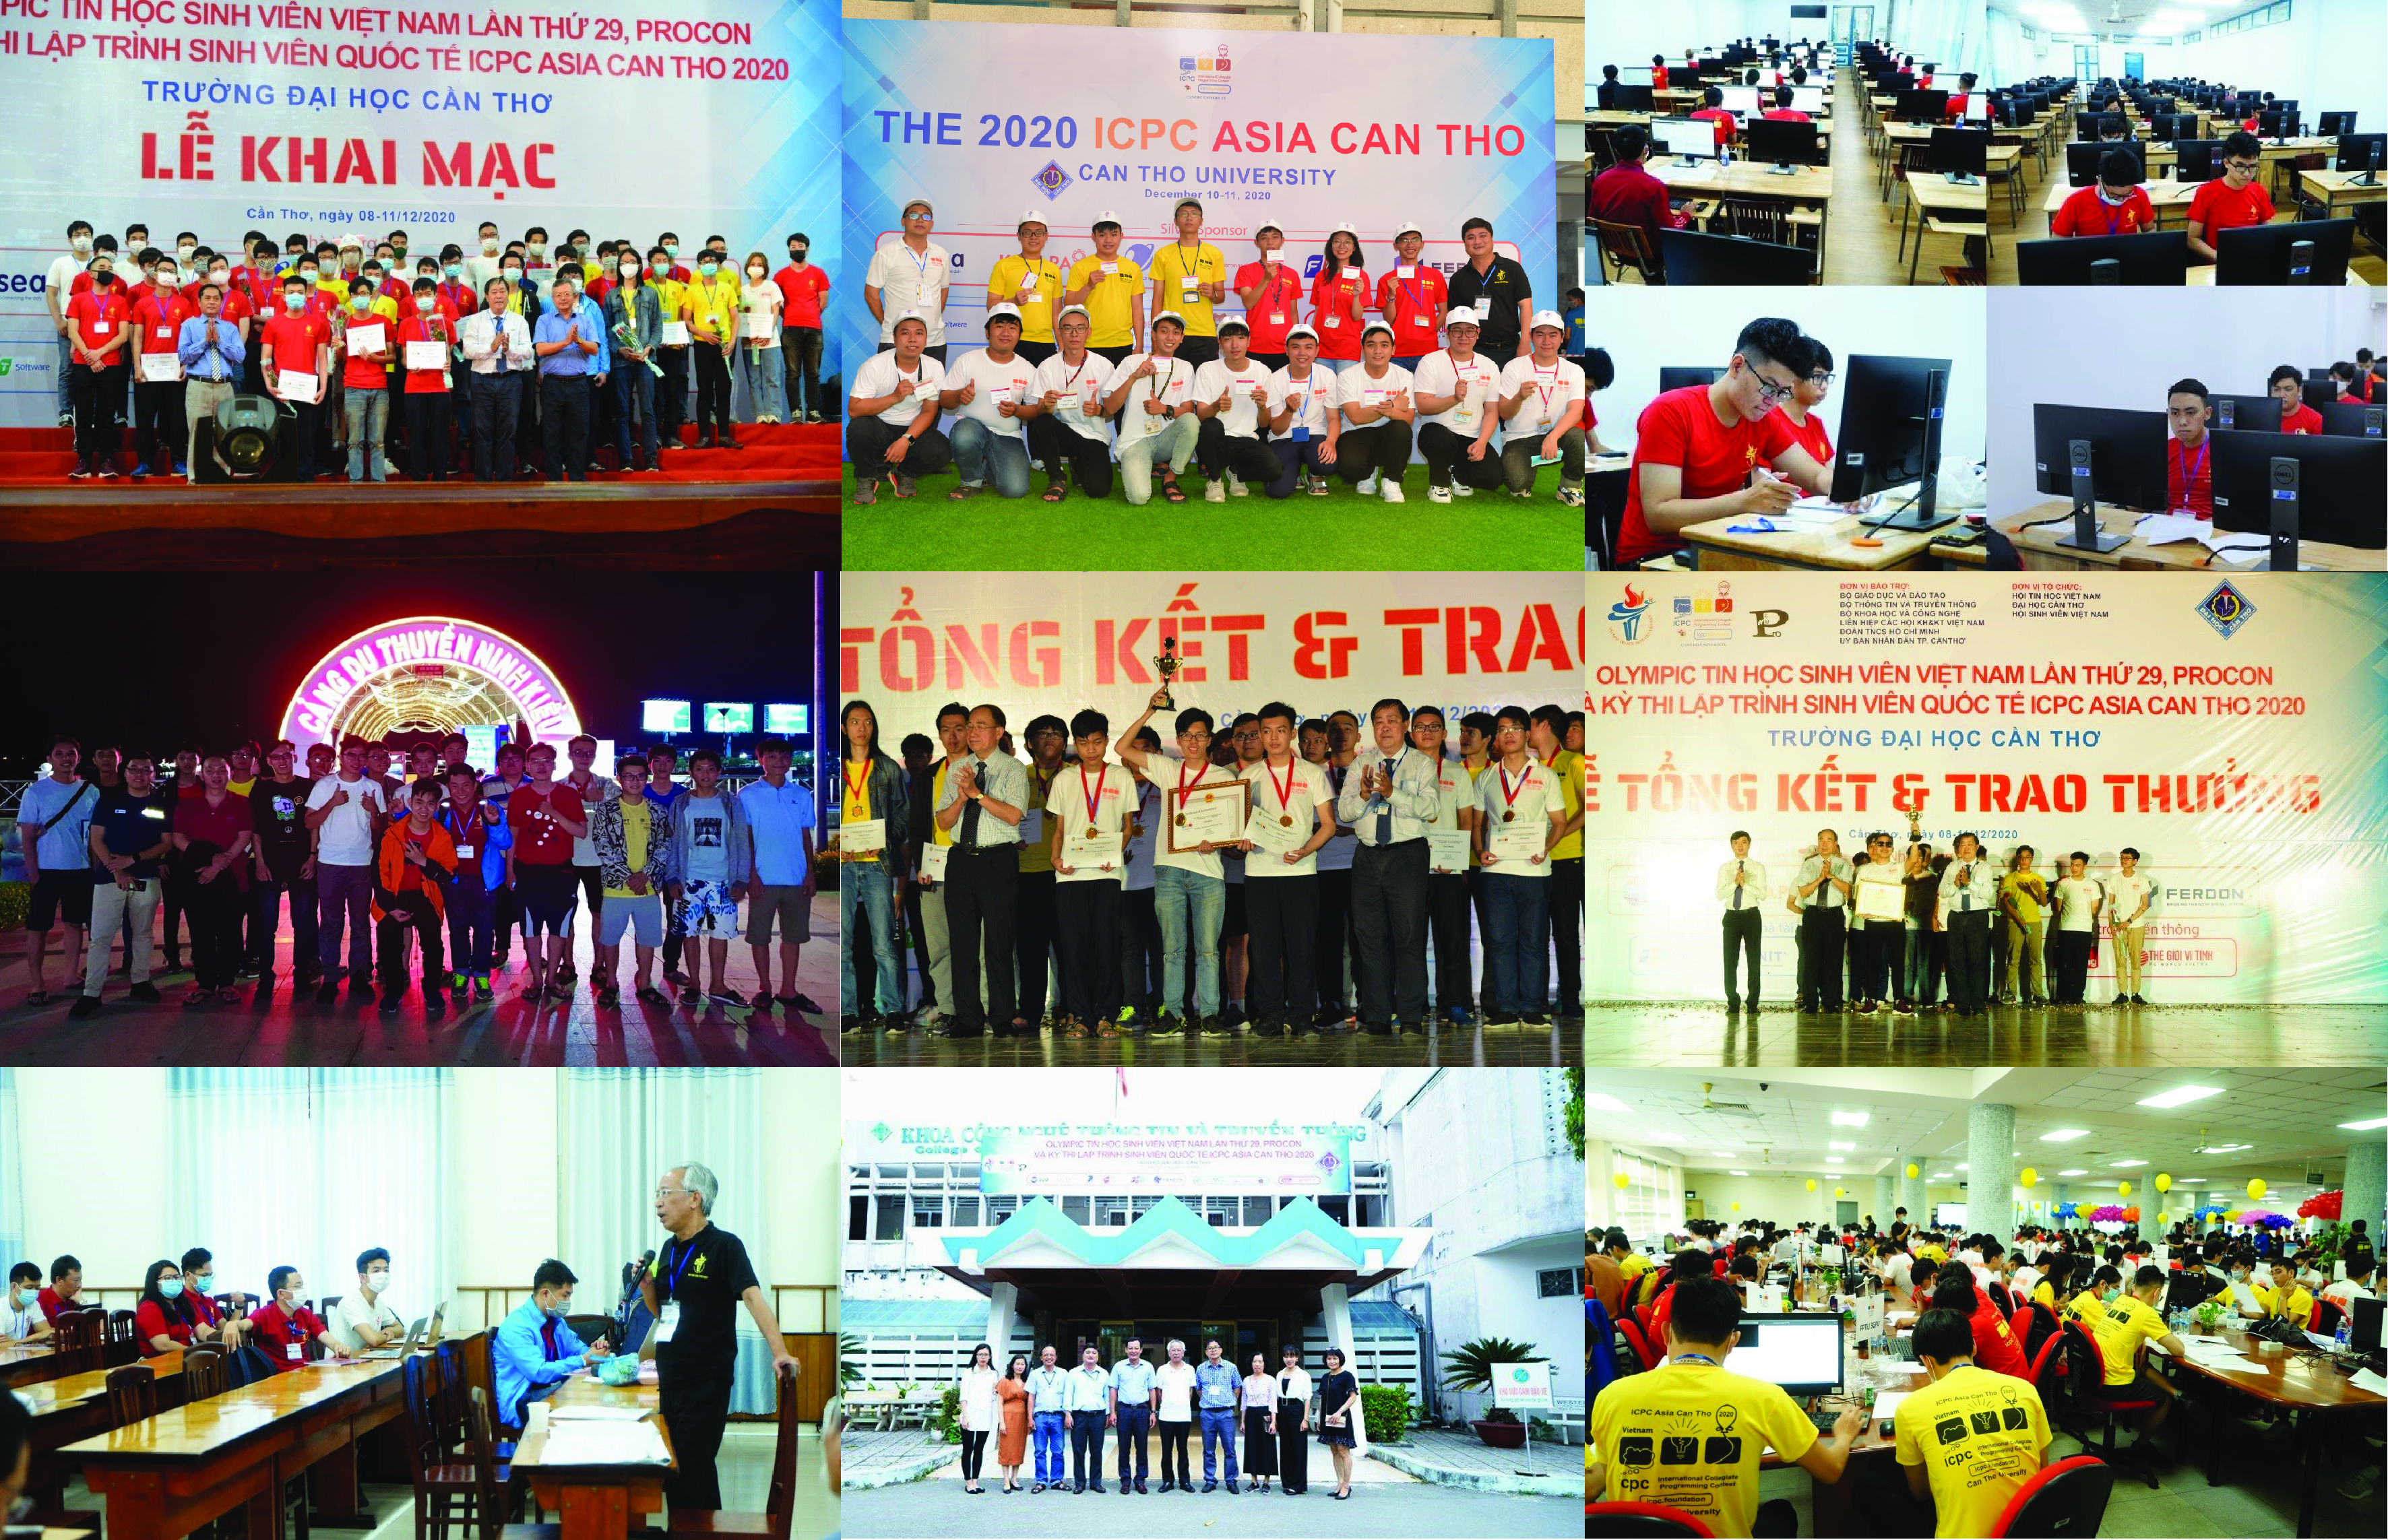 Toàn cảnh kỳ thi Olympic Tin học Sinh viên Việt Nam lần thứ 29 (OLP’20), PROCON 2020 và Kỳ thi lập trình sinh viên Quốc tế ICPC Asia Can Tho